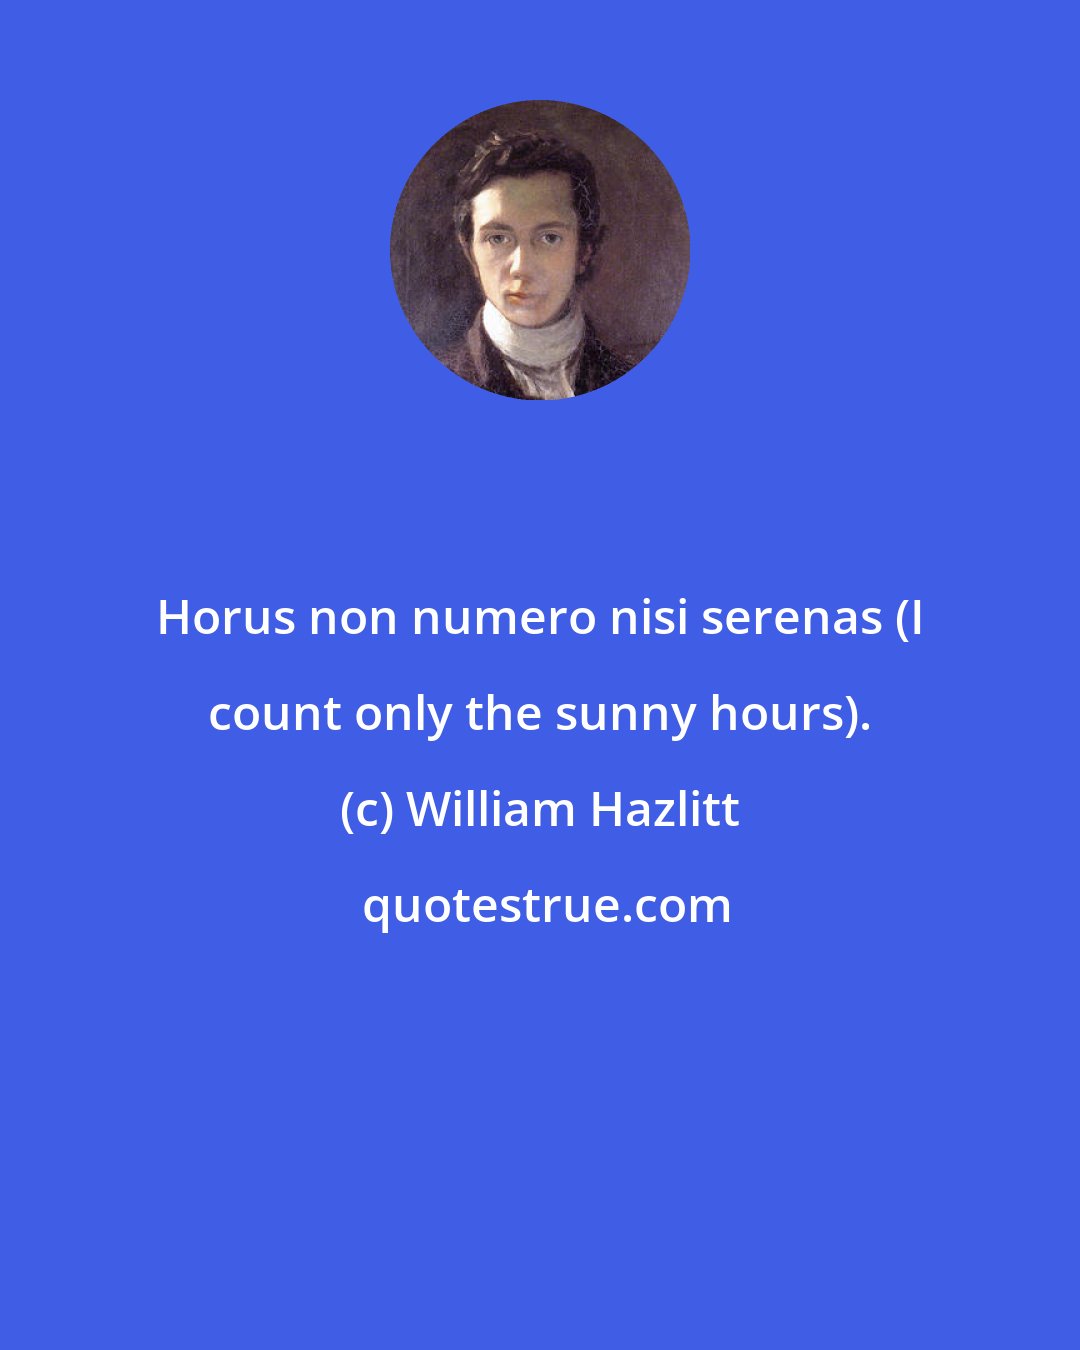 William Hazlitt: Horus non numero nisi serenas (I count only the sunny hours).